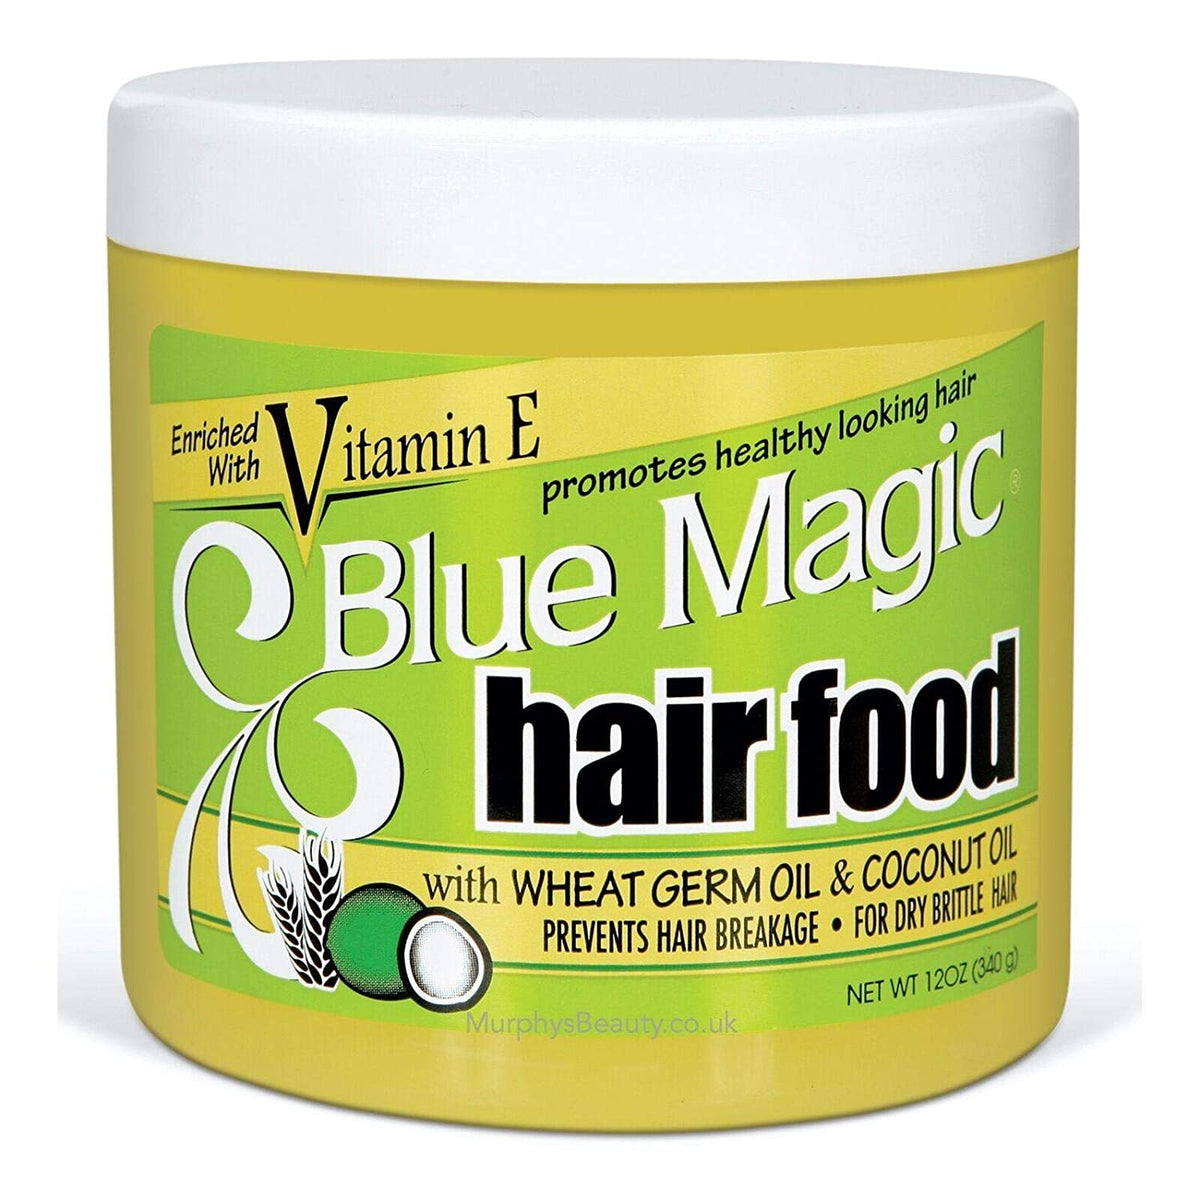 Blue Magic Argan Oil & Vitamin-E Leave-In Conditioner 13.75 oz